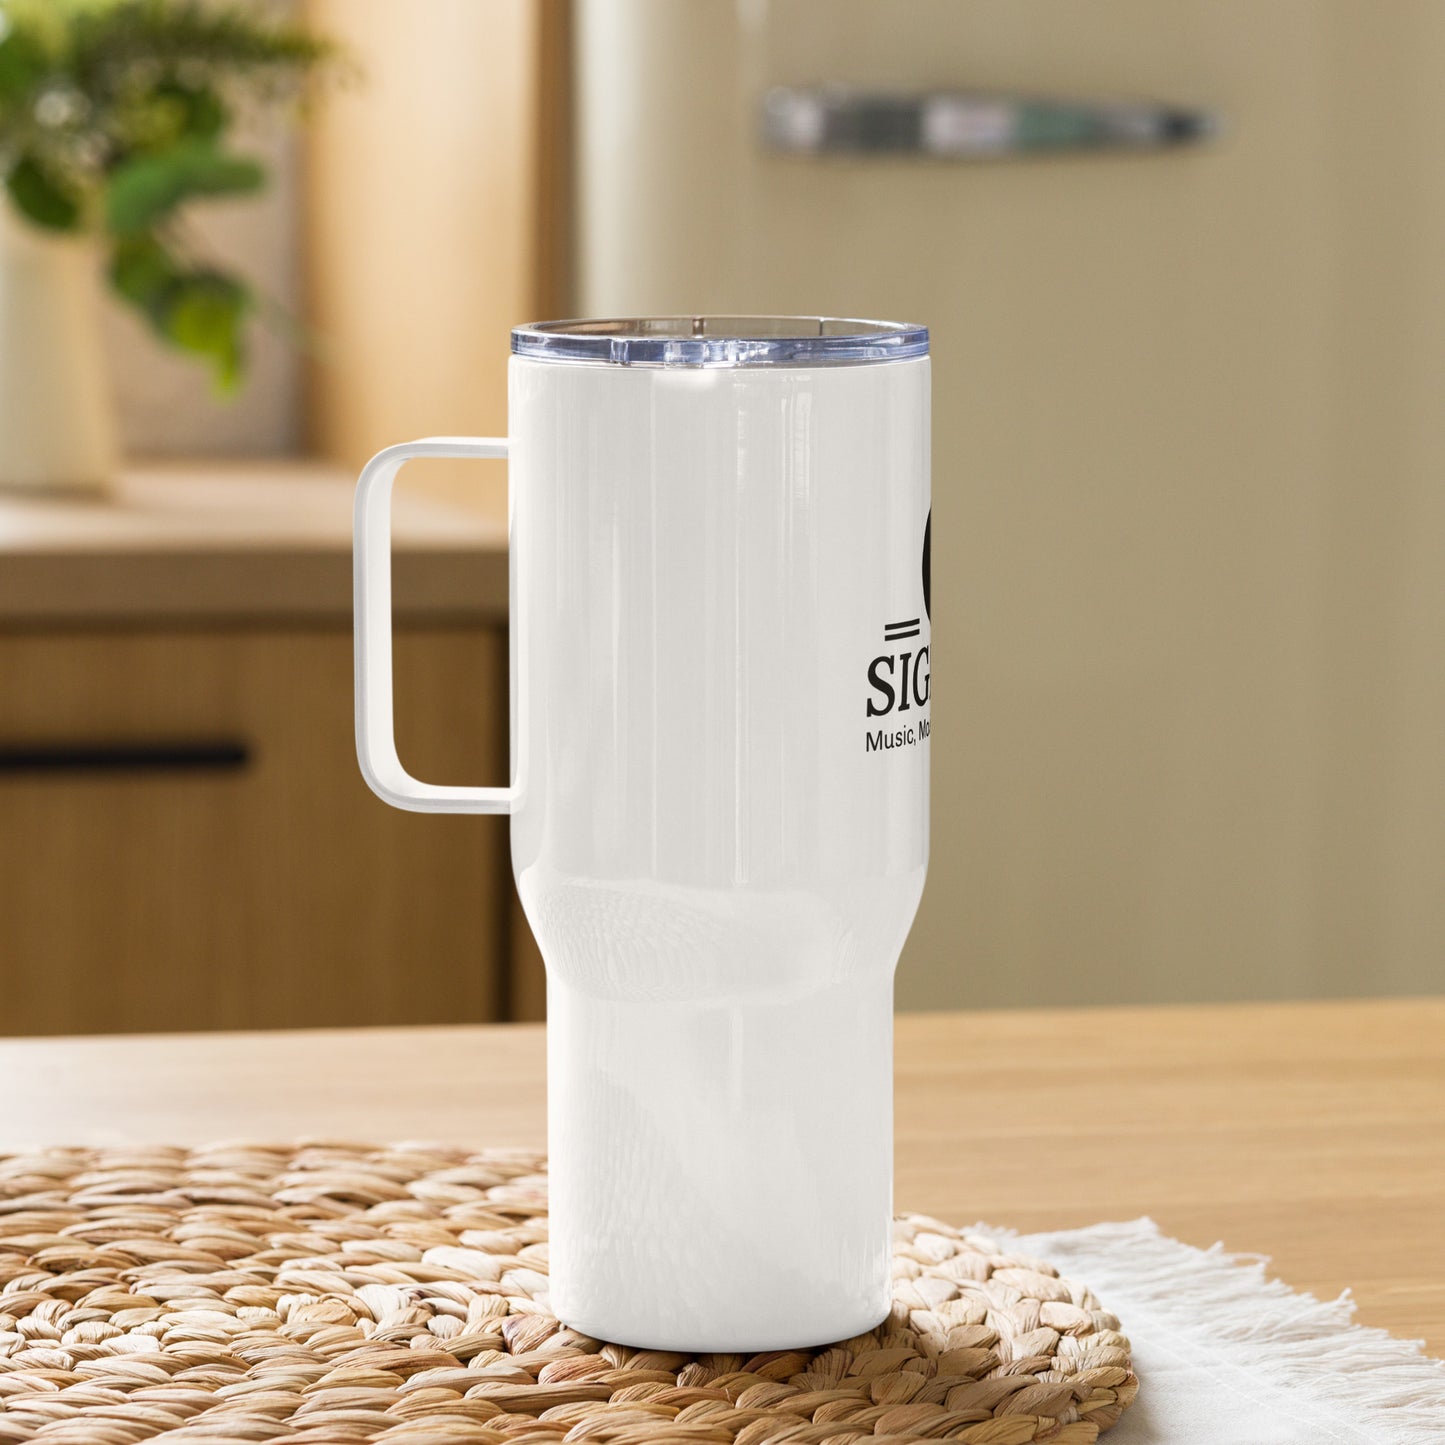 Travel mug with a handle Sigbeez